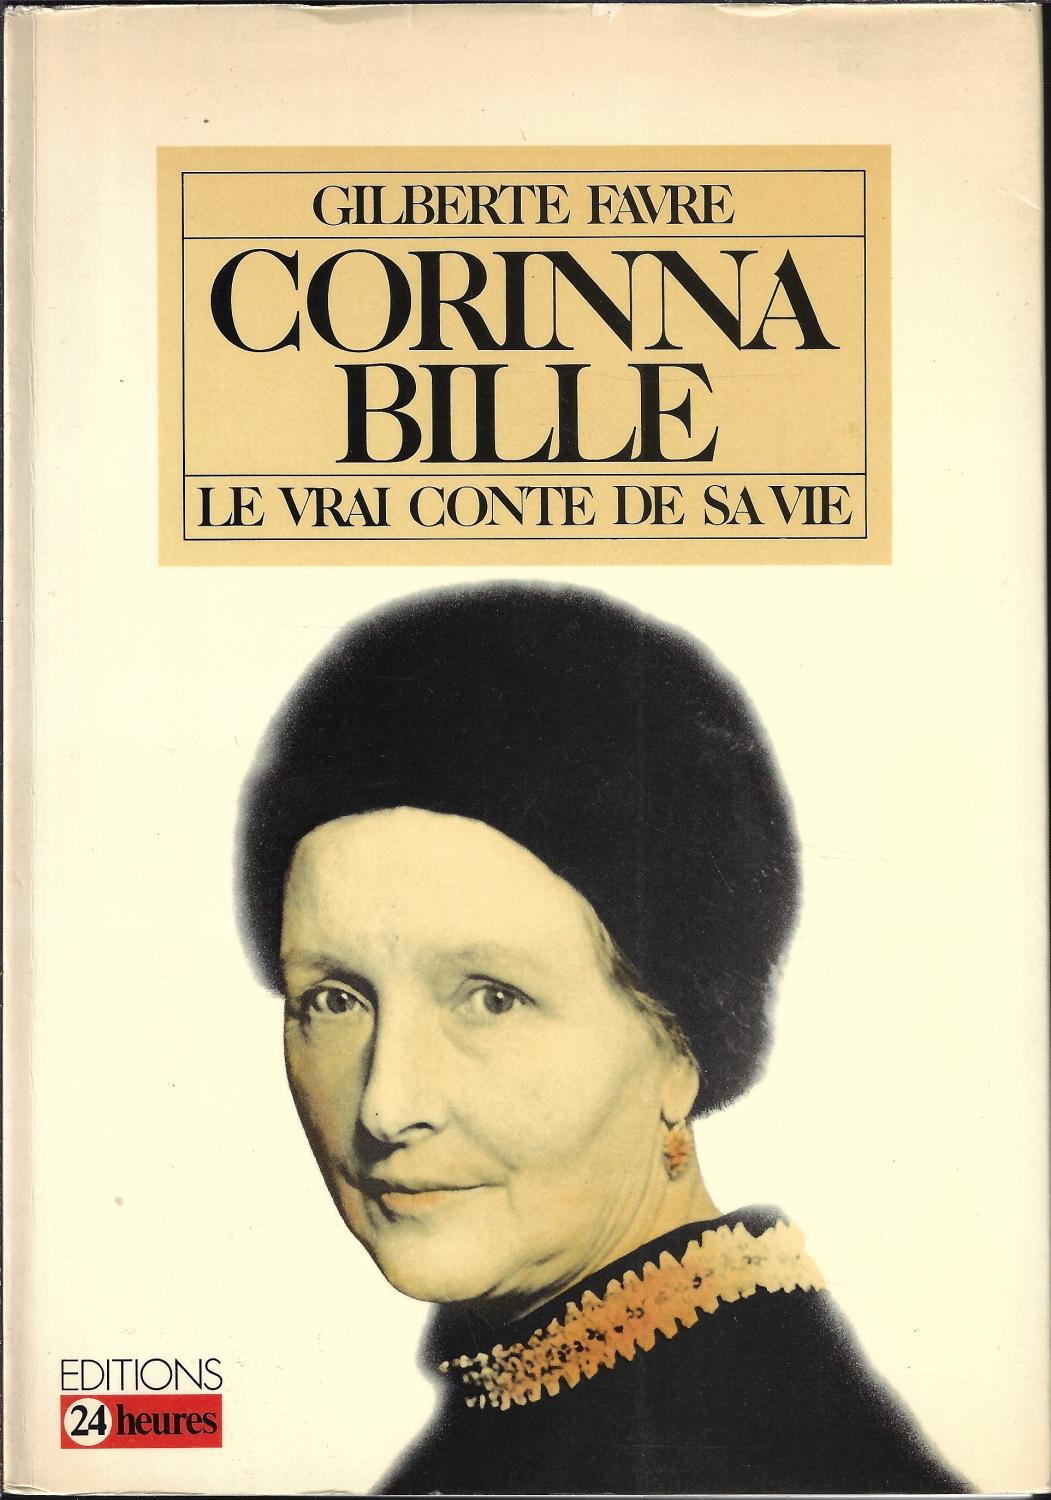 Corinna Bille: Le vrai conte de sa vie (French Edition) - Gilberte Favre